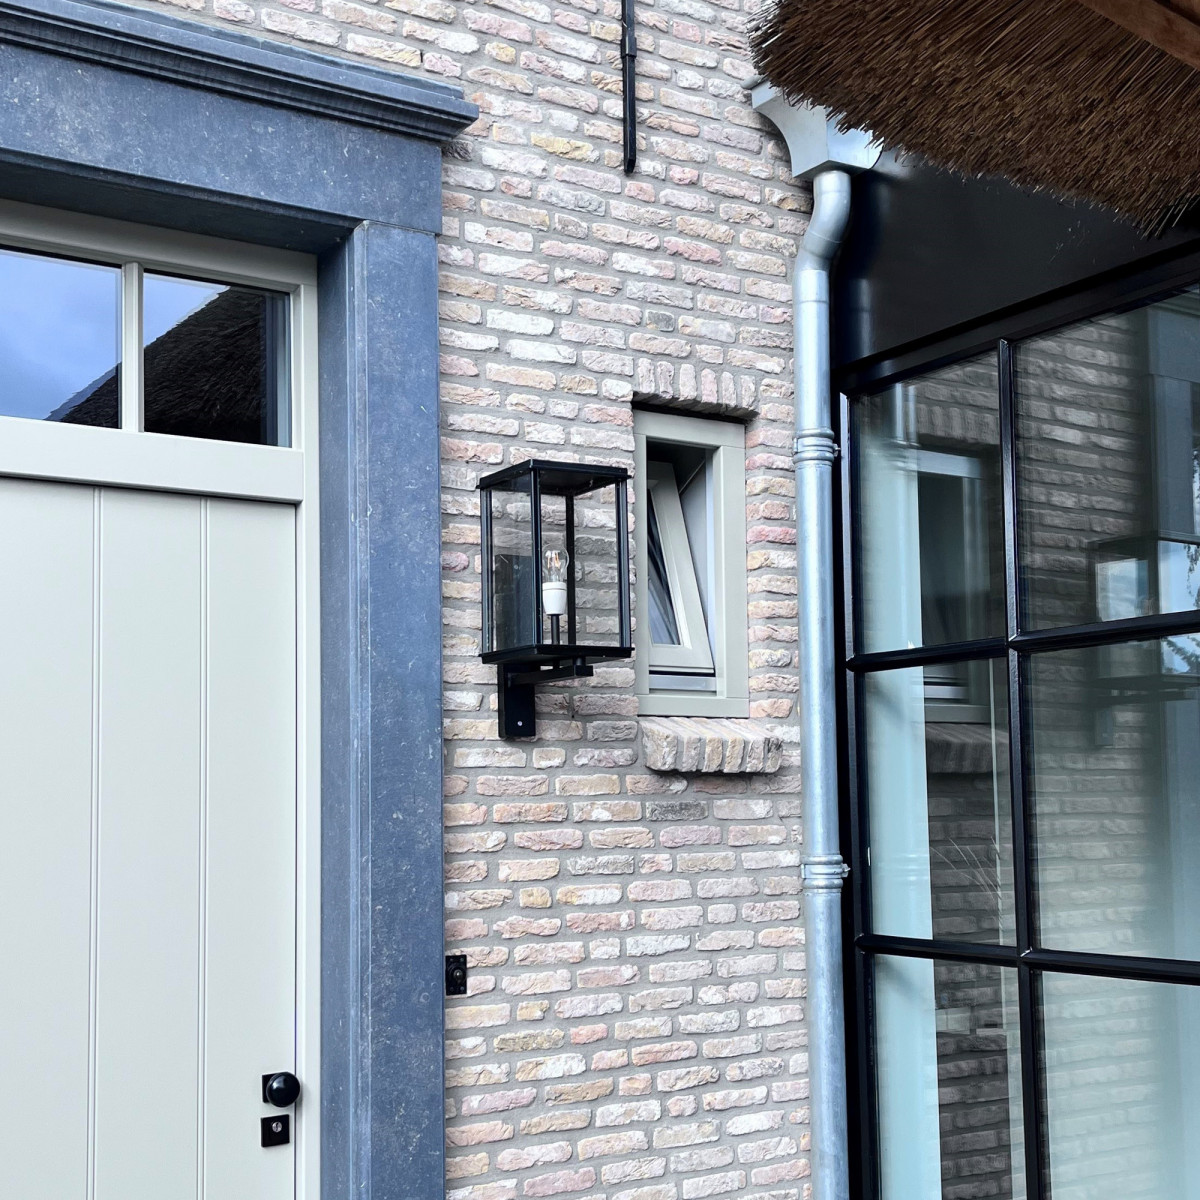 Stylish vitrine outdoor wall light from KS outdoor lighting company